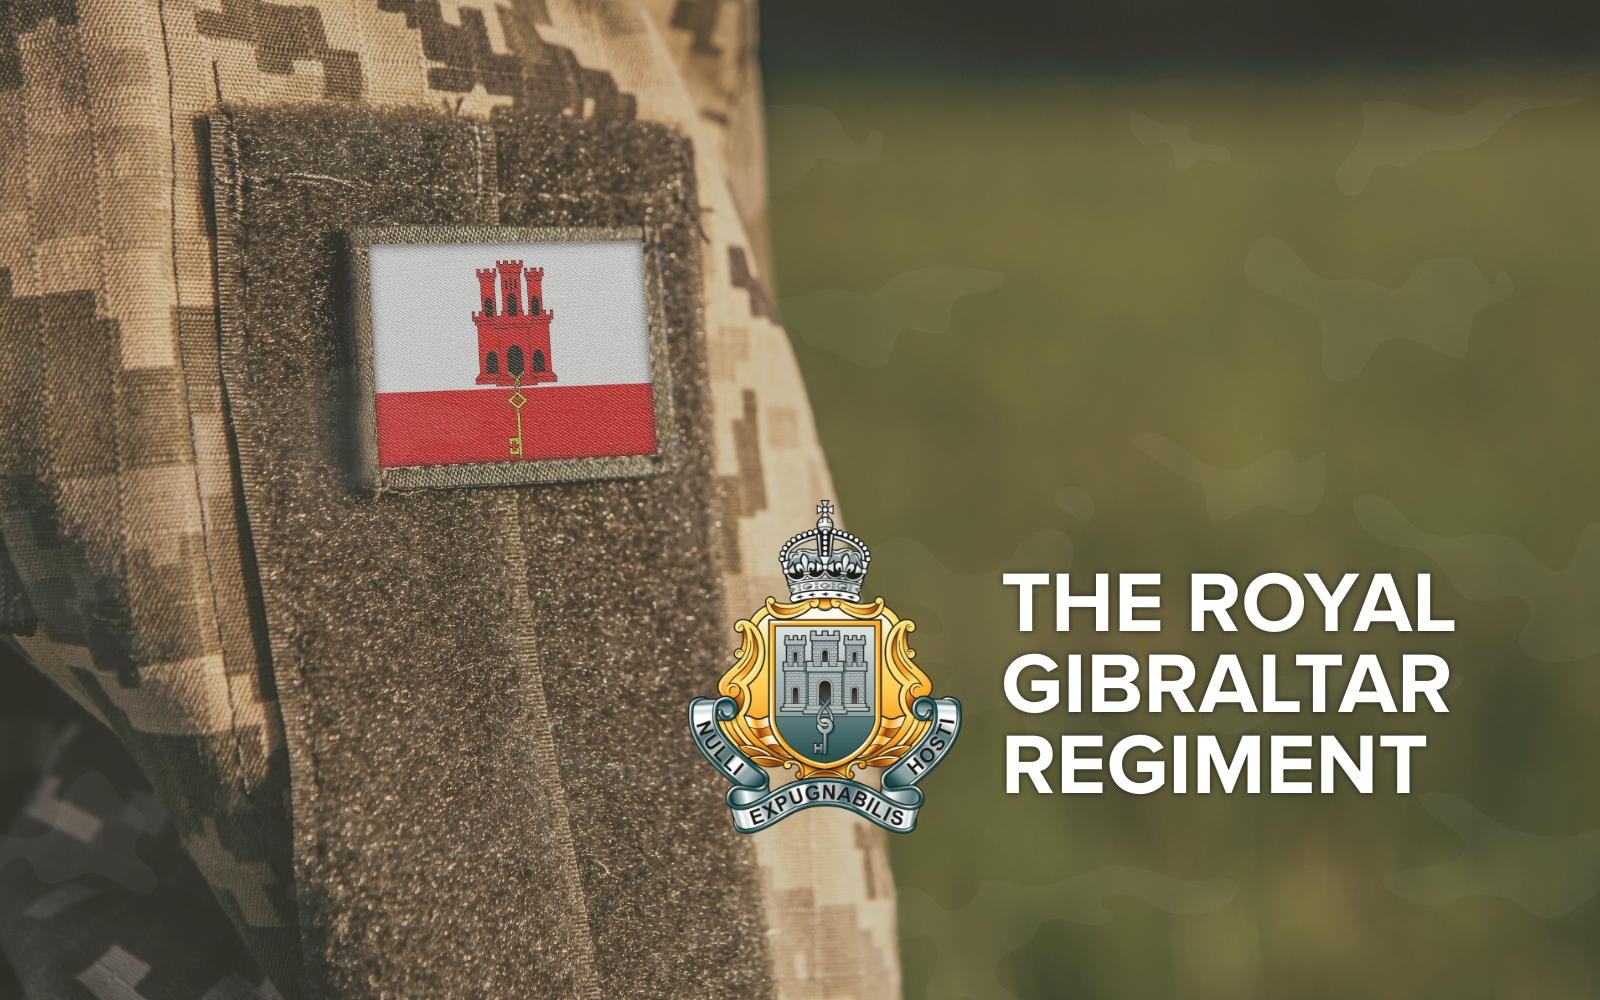 Royal Gibraltar Regiment Image